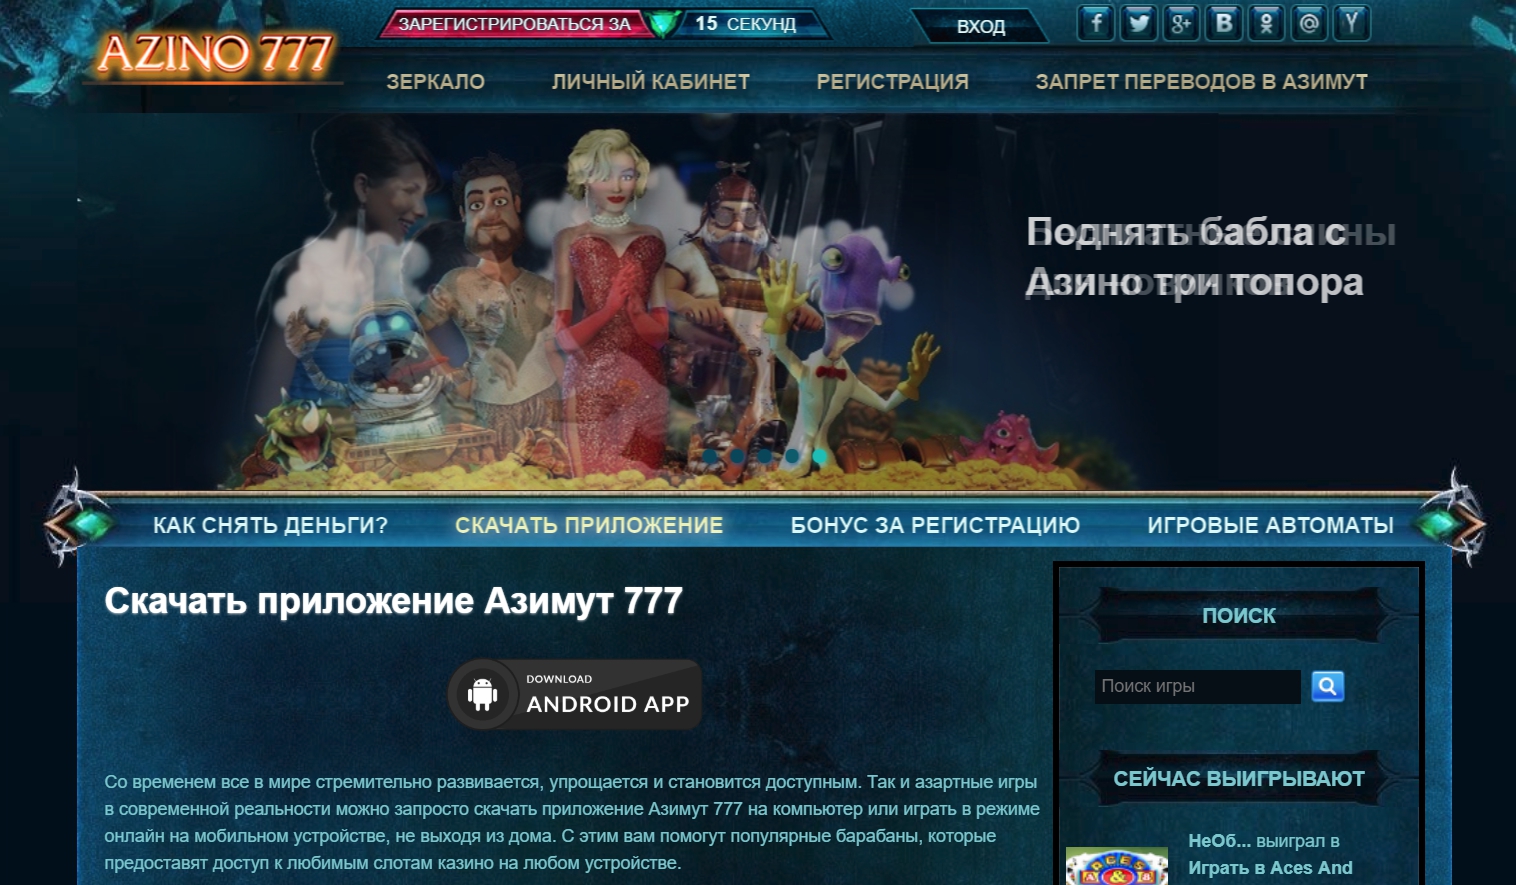 Азино777 при регистрации 777 рублей официальный бонус за регистрацию мостбет зеркало сегодня https mostbet 555 ru